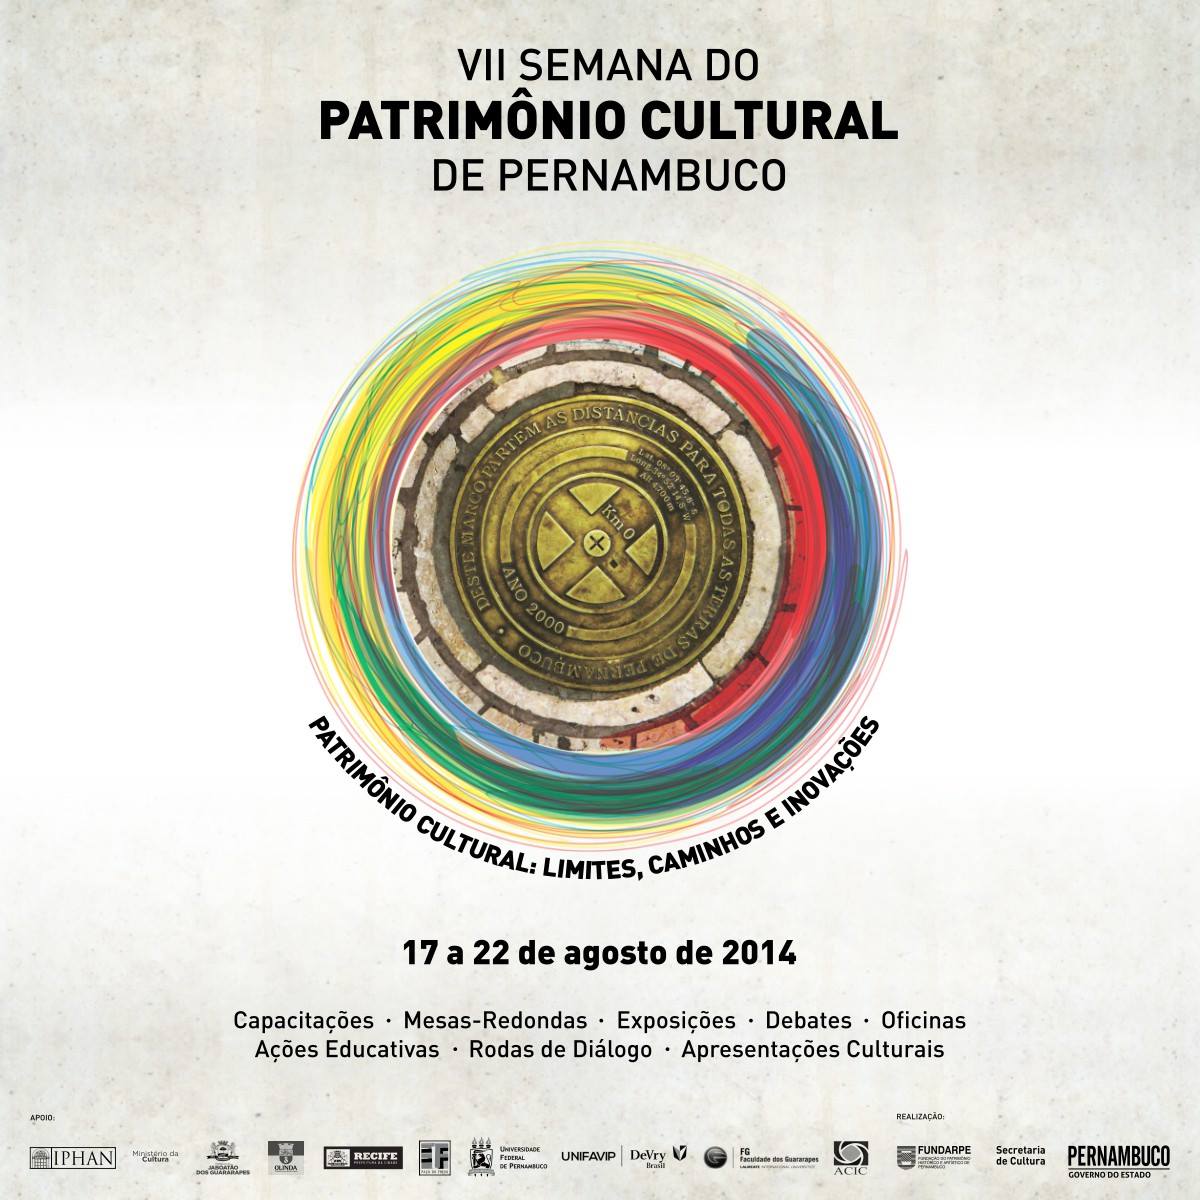 VII Semana do Patrimônio Cultural_17 a 22 agosto 2014